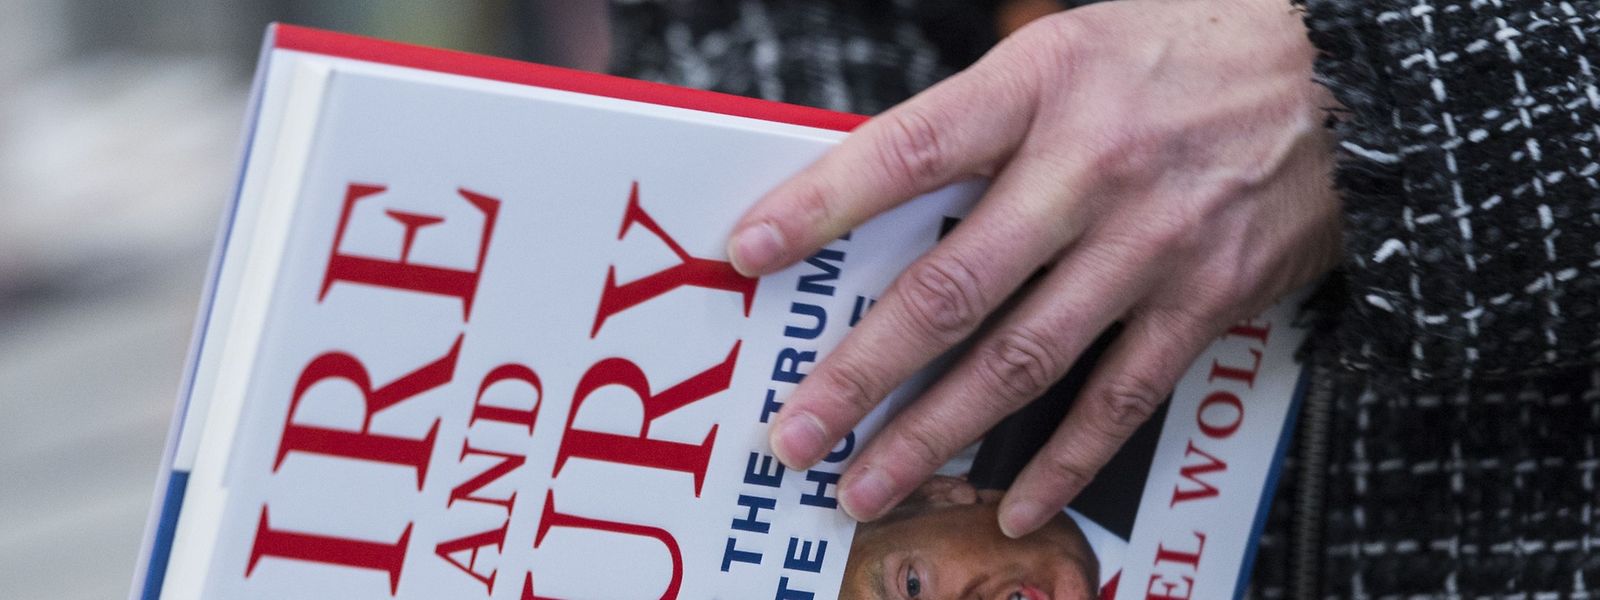 Das Buch "Fire and Fury" sorgt in Washington für Kontroverse.